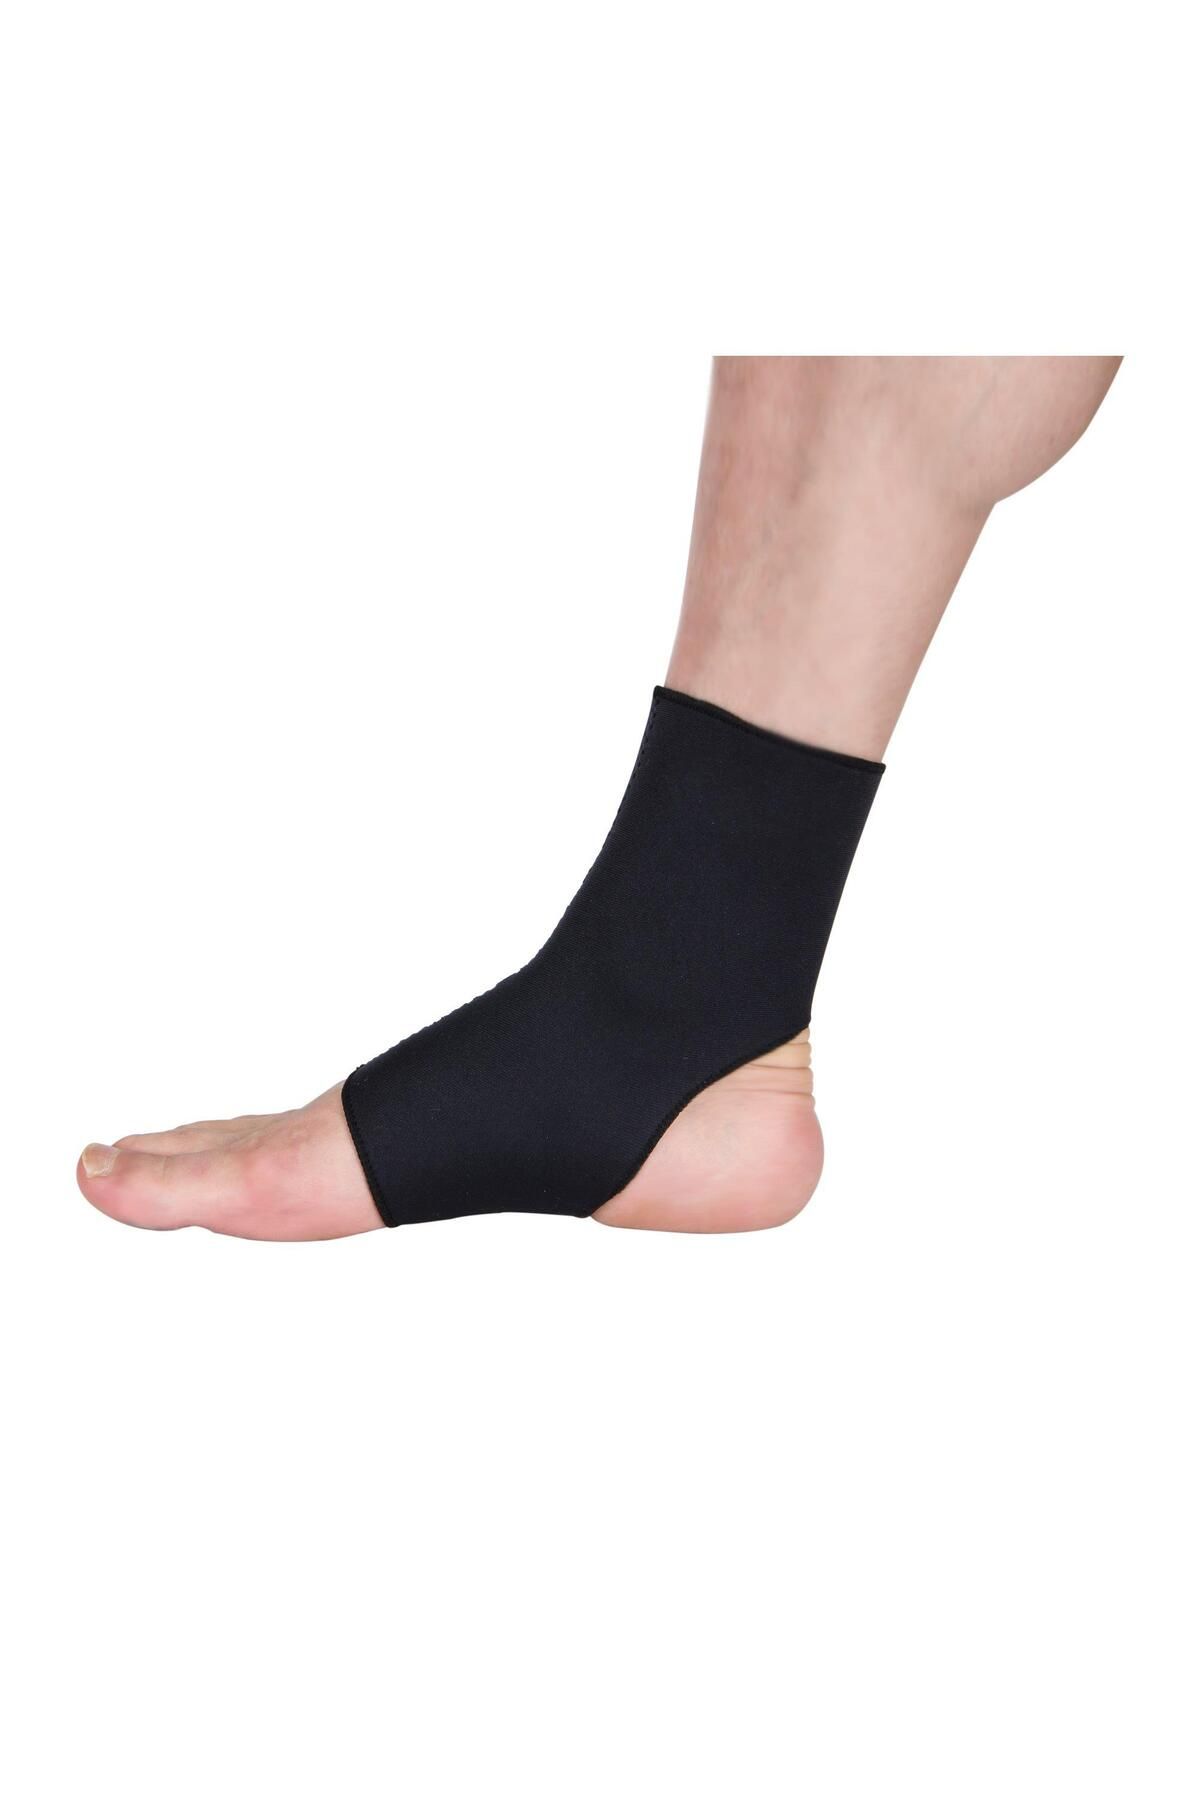 Hsport Medikal Ortopedik Elastik Bandajlı Ayak Bilekliği Ağrı Giderici Neopren Uzun Ayak Bilekliği